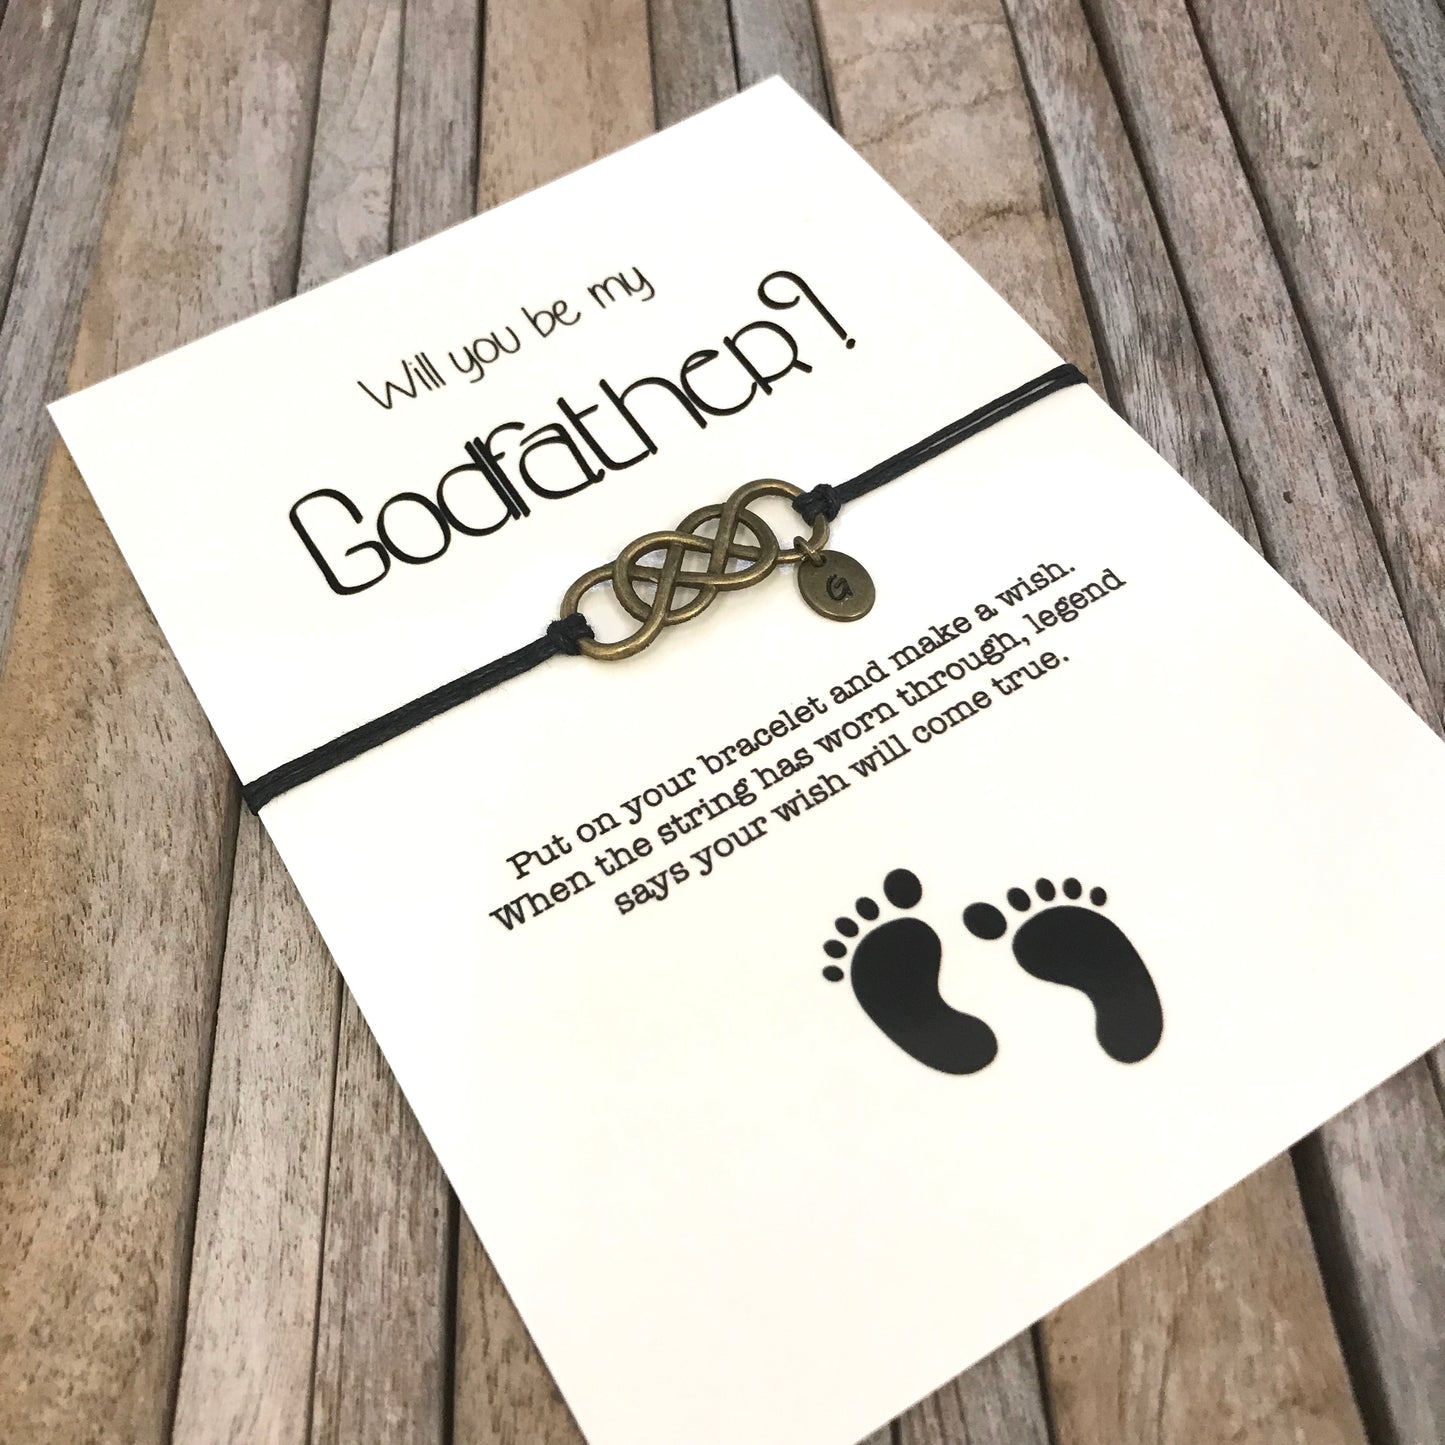 Peetvaderarmband met gepersonaliseerde initiële bedel, geplaatst op de voorstelkaart 'Wil jij mijn peetvader zijn'